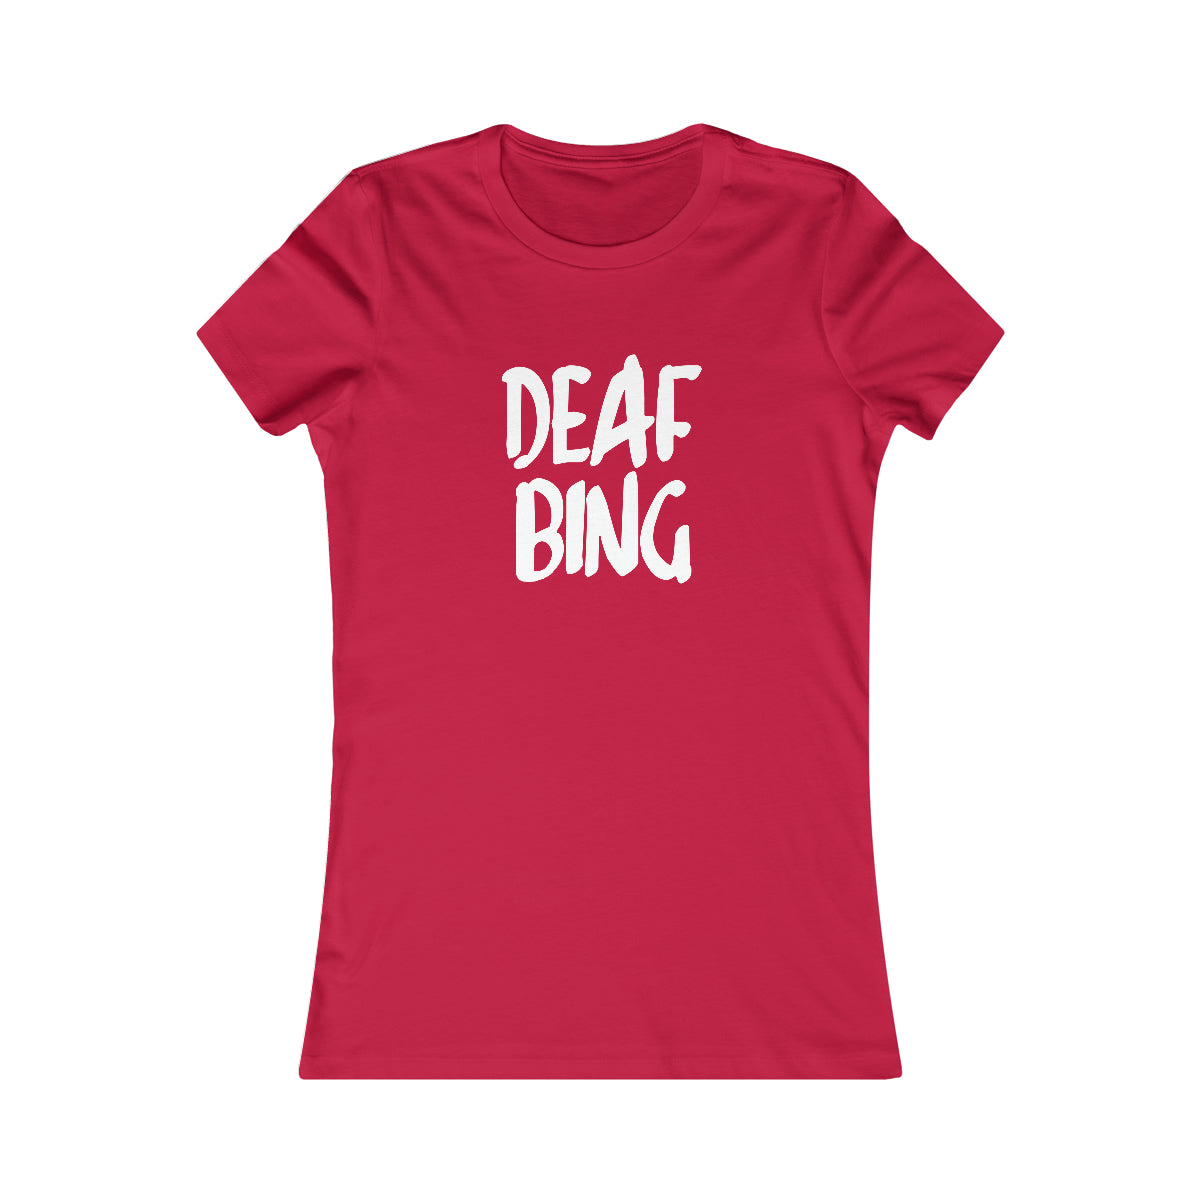 Deaf Bing - Deaf Bing Tees - Women's Favorite Tee